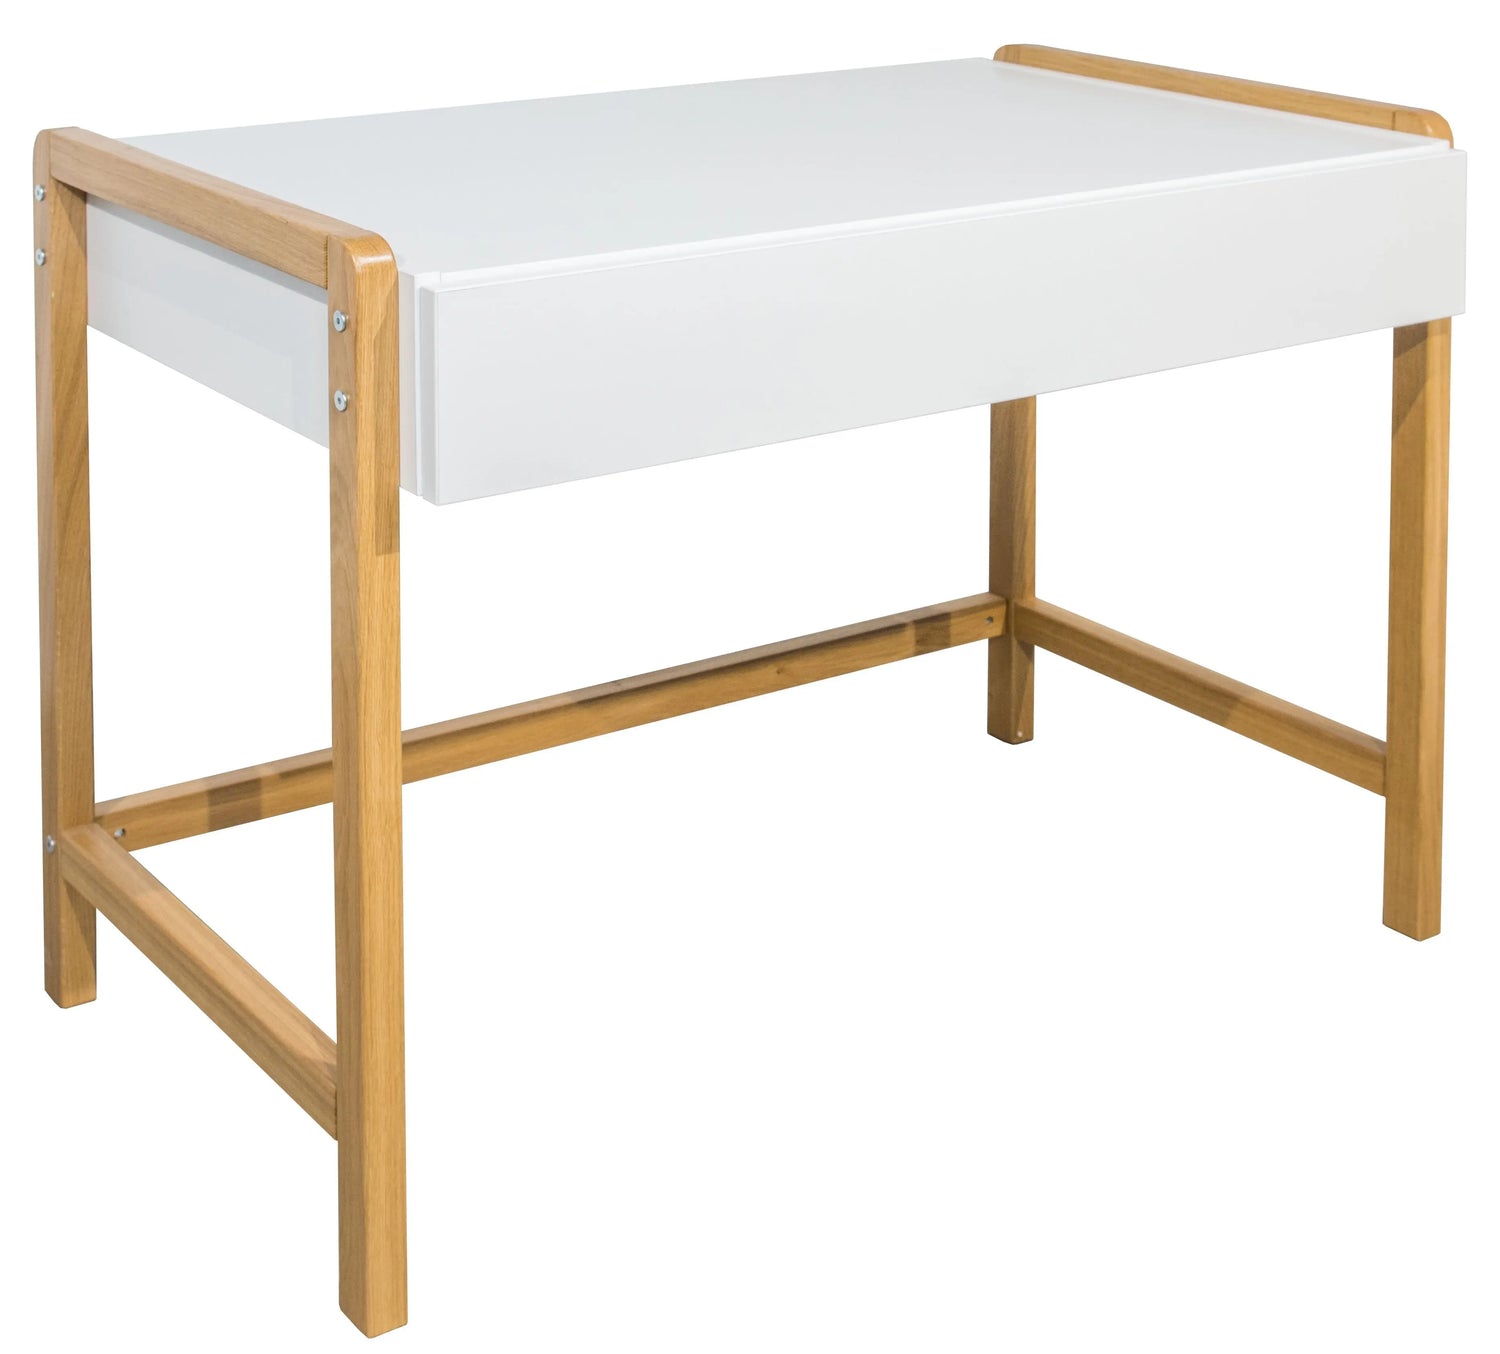 baltos spalvos vaikiskas rasomasis stalas kuris yra pastatytas vaiku kambaryje 